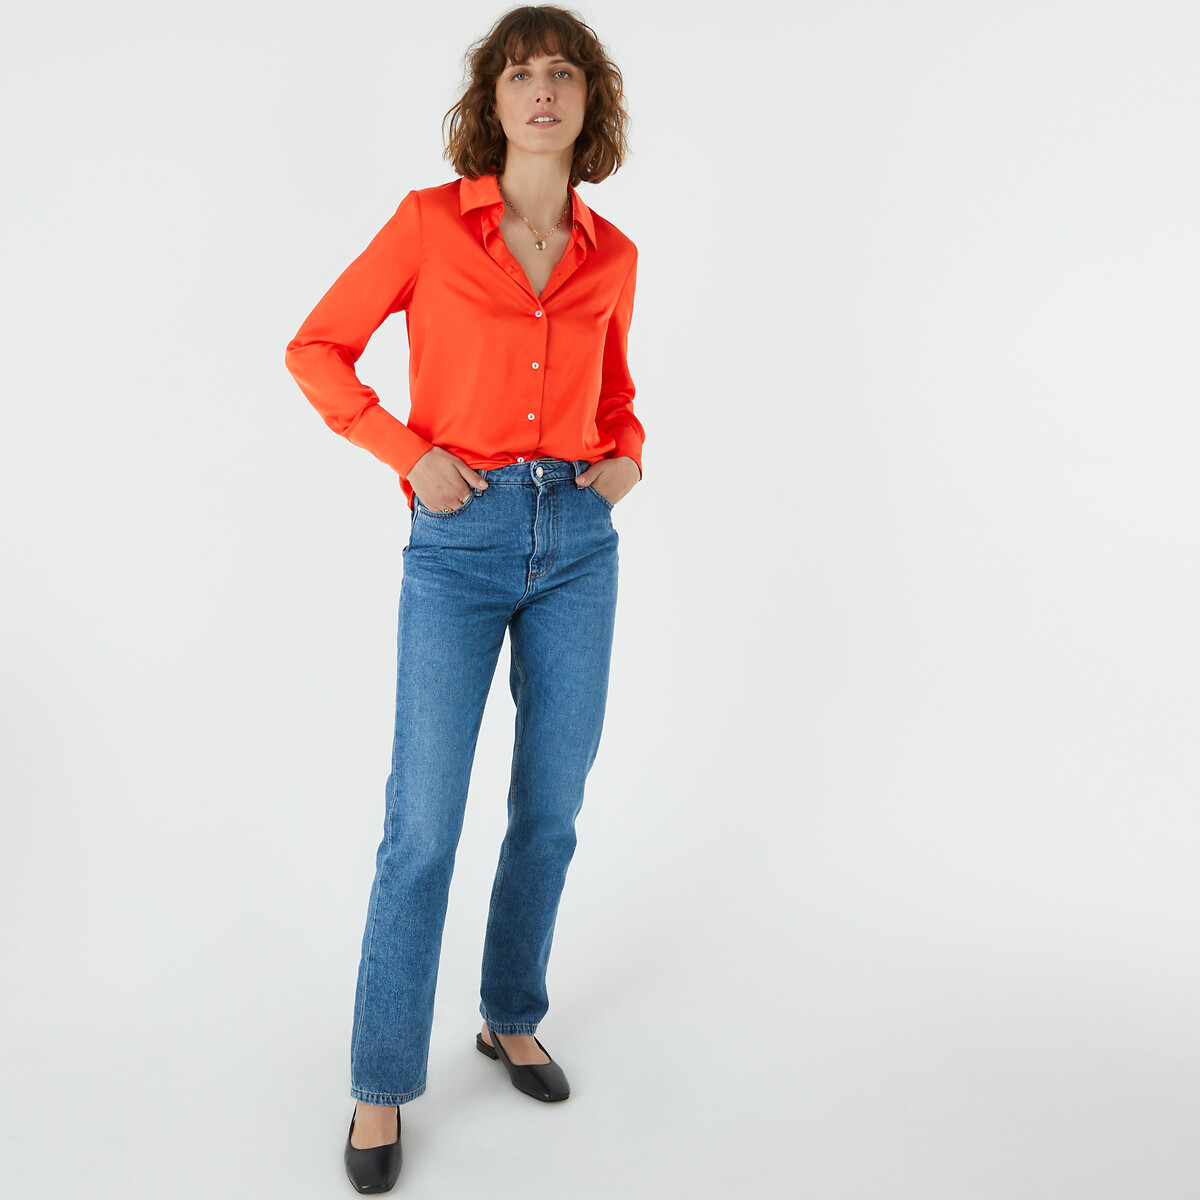 Рубашка с длинными рукавами  50 (FR) - 56 (RUS) оранжевый LaRedoute, размер 50 (FR) - 56 (RUS) Рубашка с длинными рукавами  50 (FR) - 56 (RUS) оранжевый - фото 2